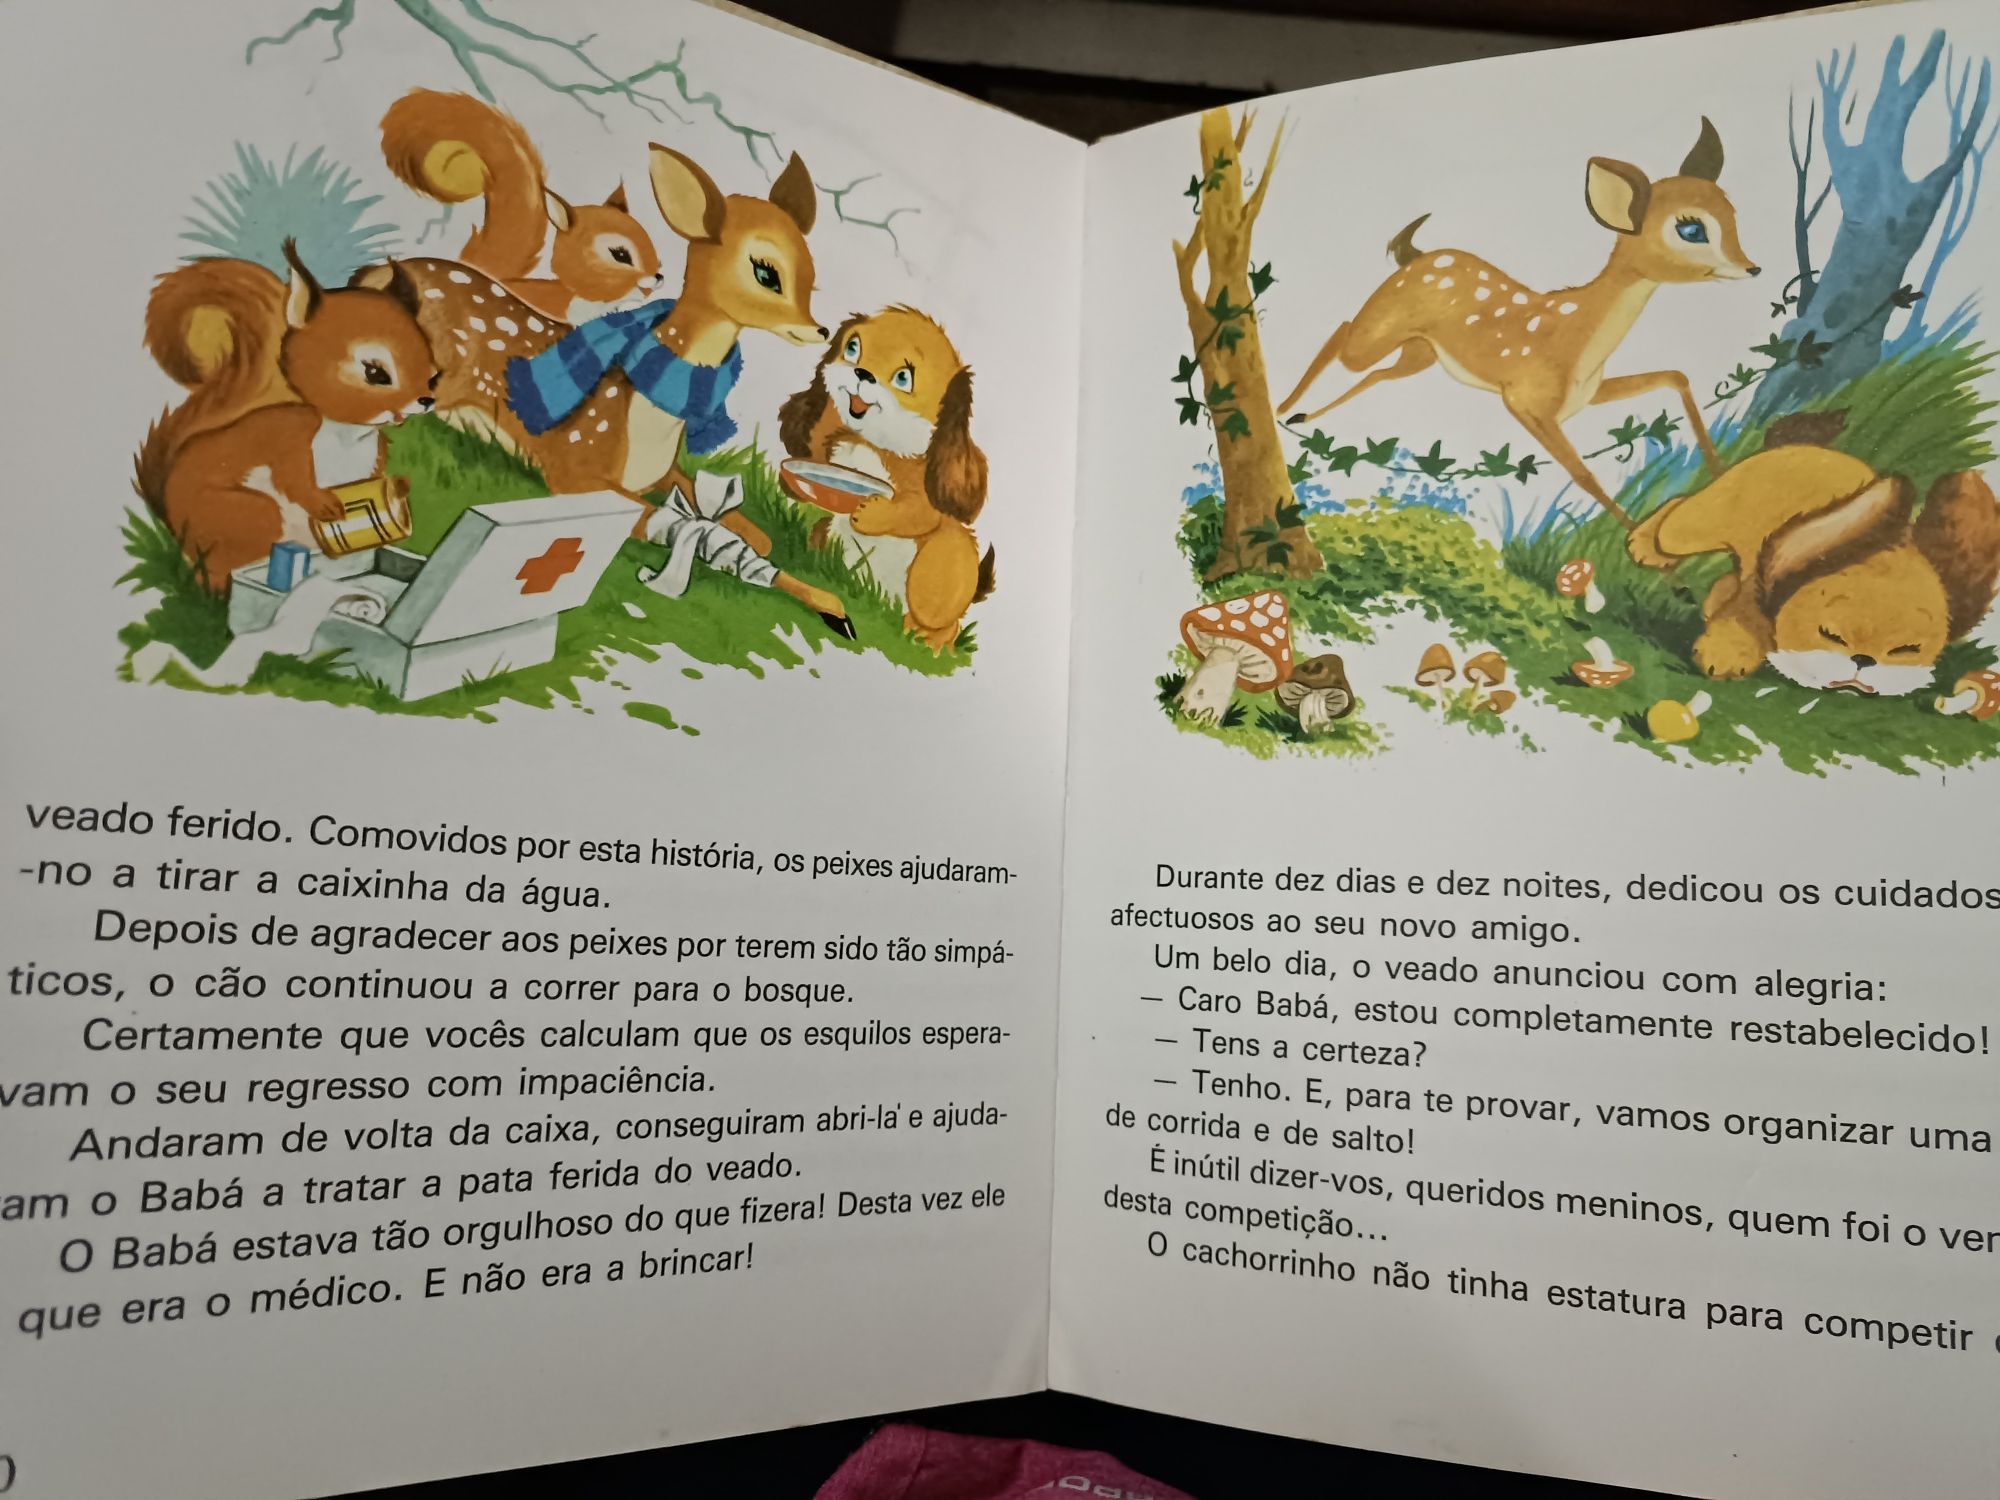 Livro infantil Festa nos bosques